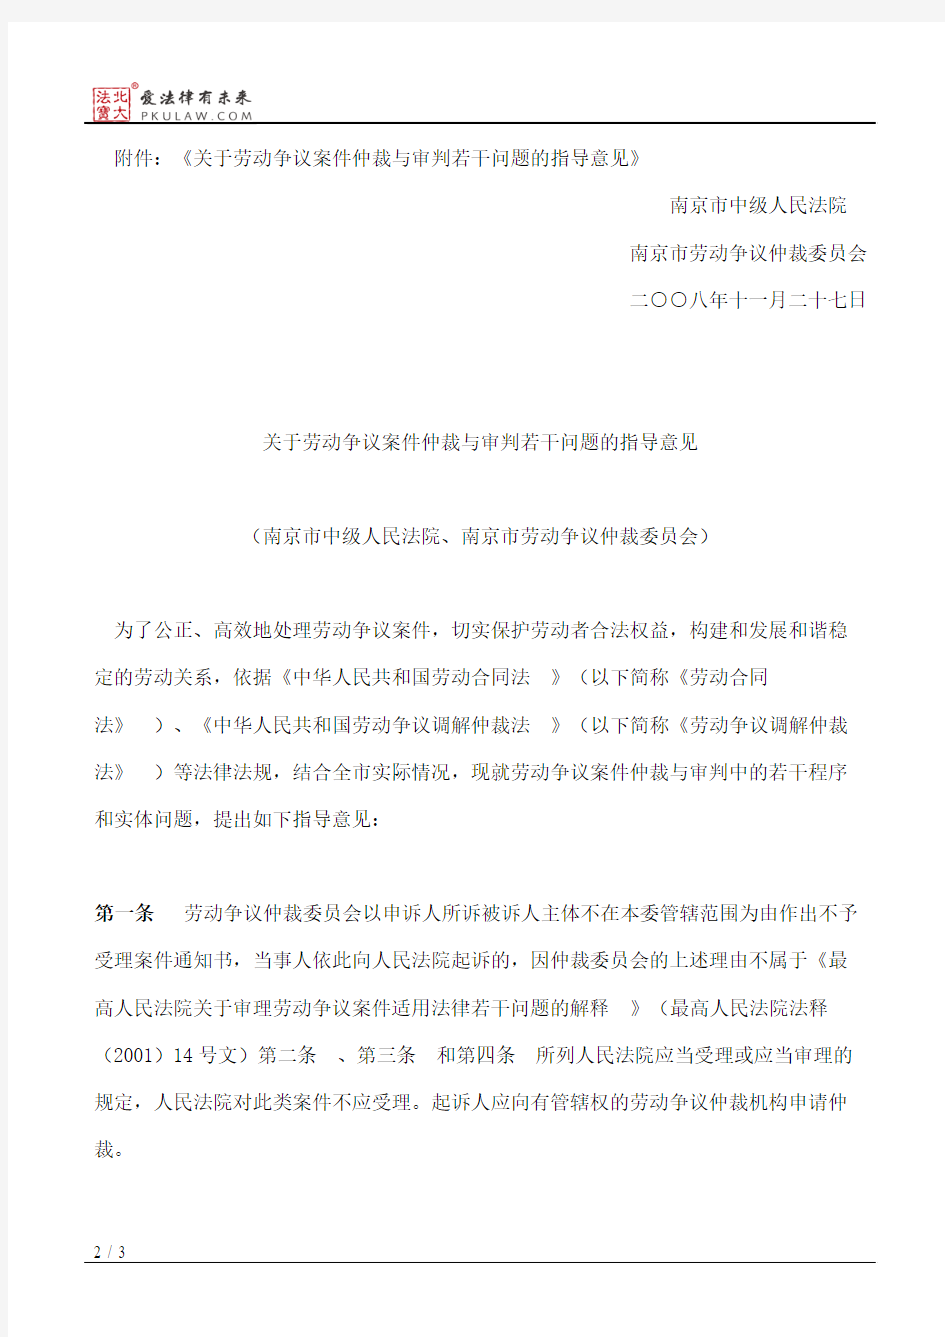 南京市中级人民法院、南京市劳动争议仲裁委员会关于印发《关于劳